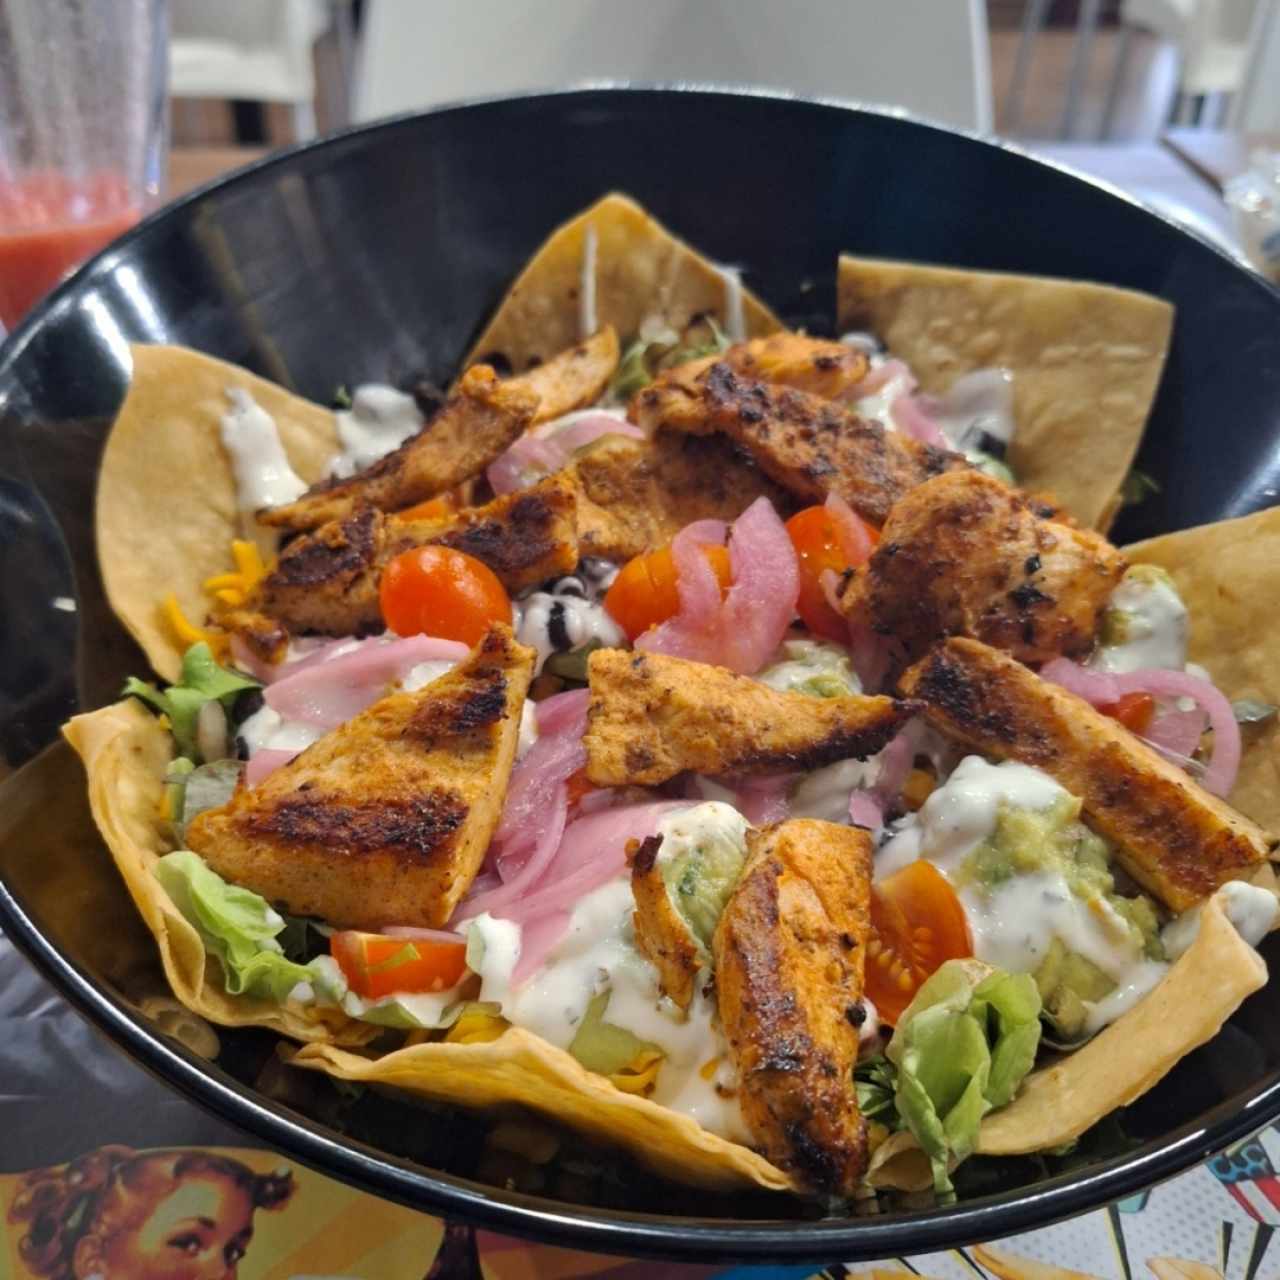 Vegetarian - Mexican Taco Salad